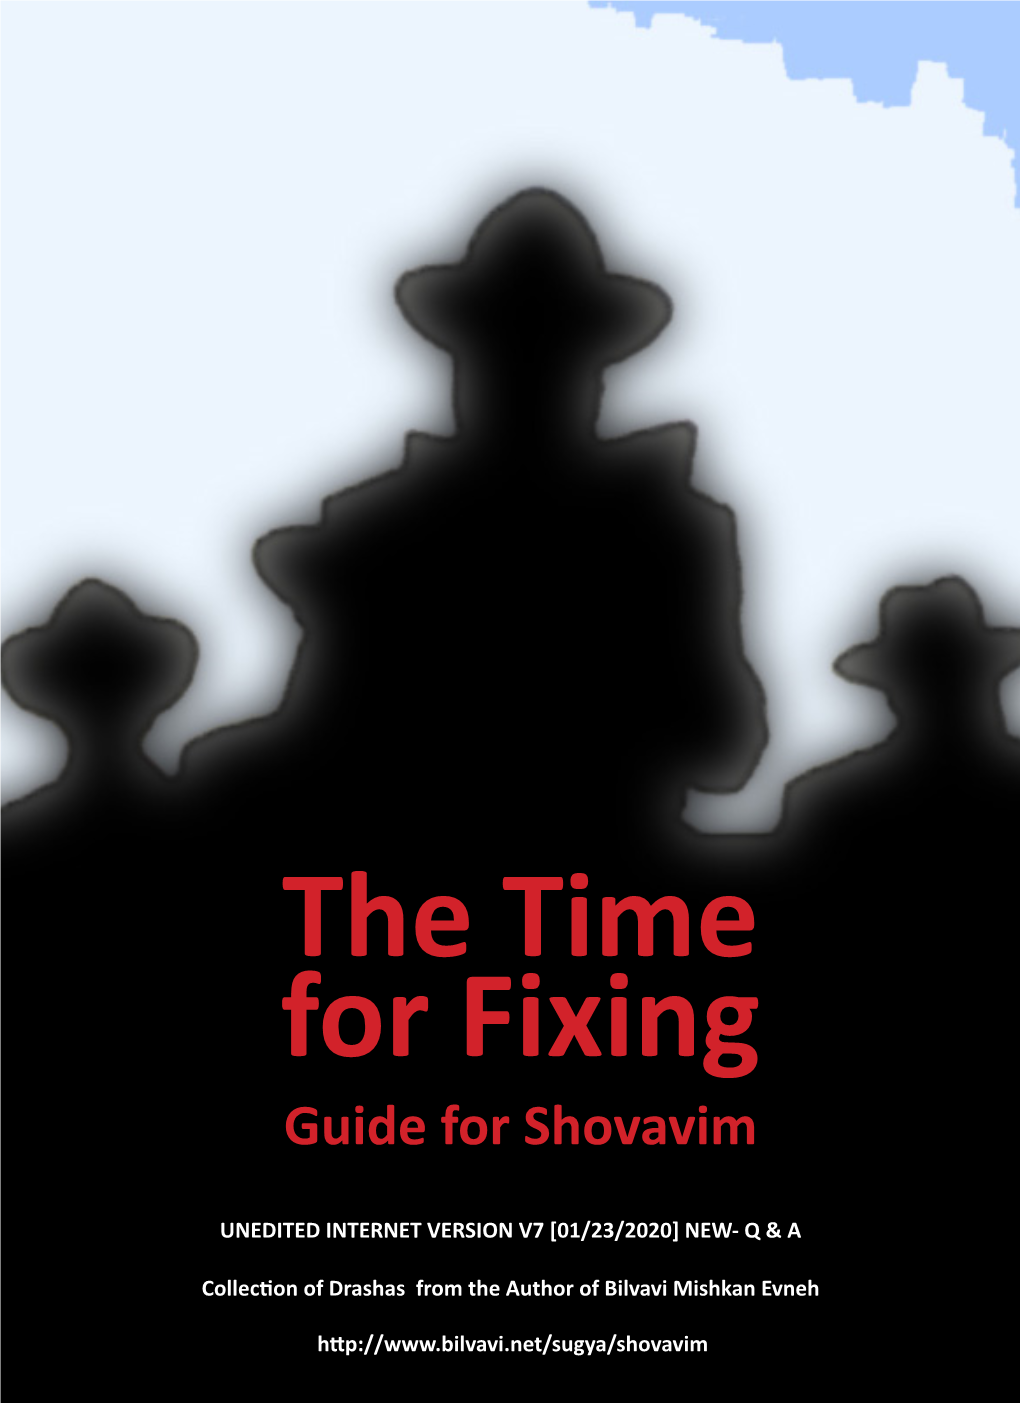 Guide for Shovavim